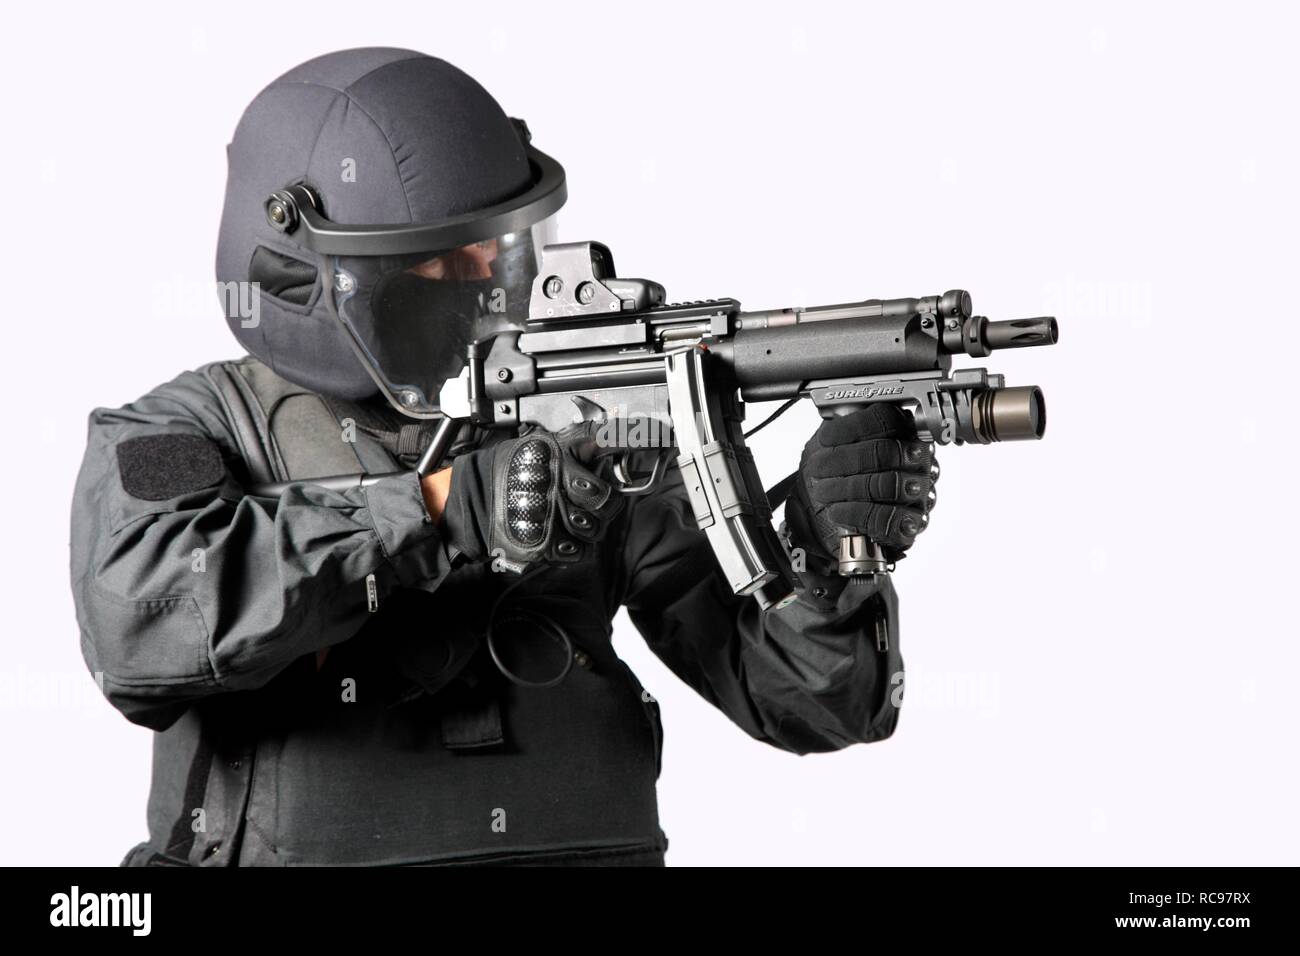 Polizei, besondere Task Force, SEK, Officer tragen volle Schutzwirkung einheitliche Holding eine Heckler & Koch MP5-Maschinenpistole Stockfoto